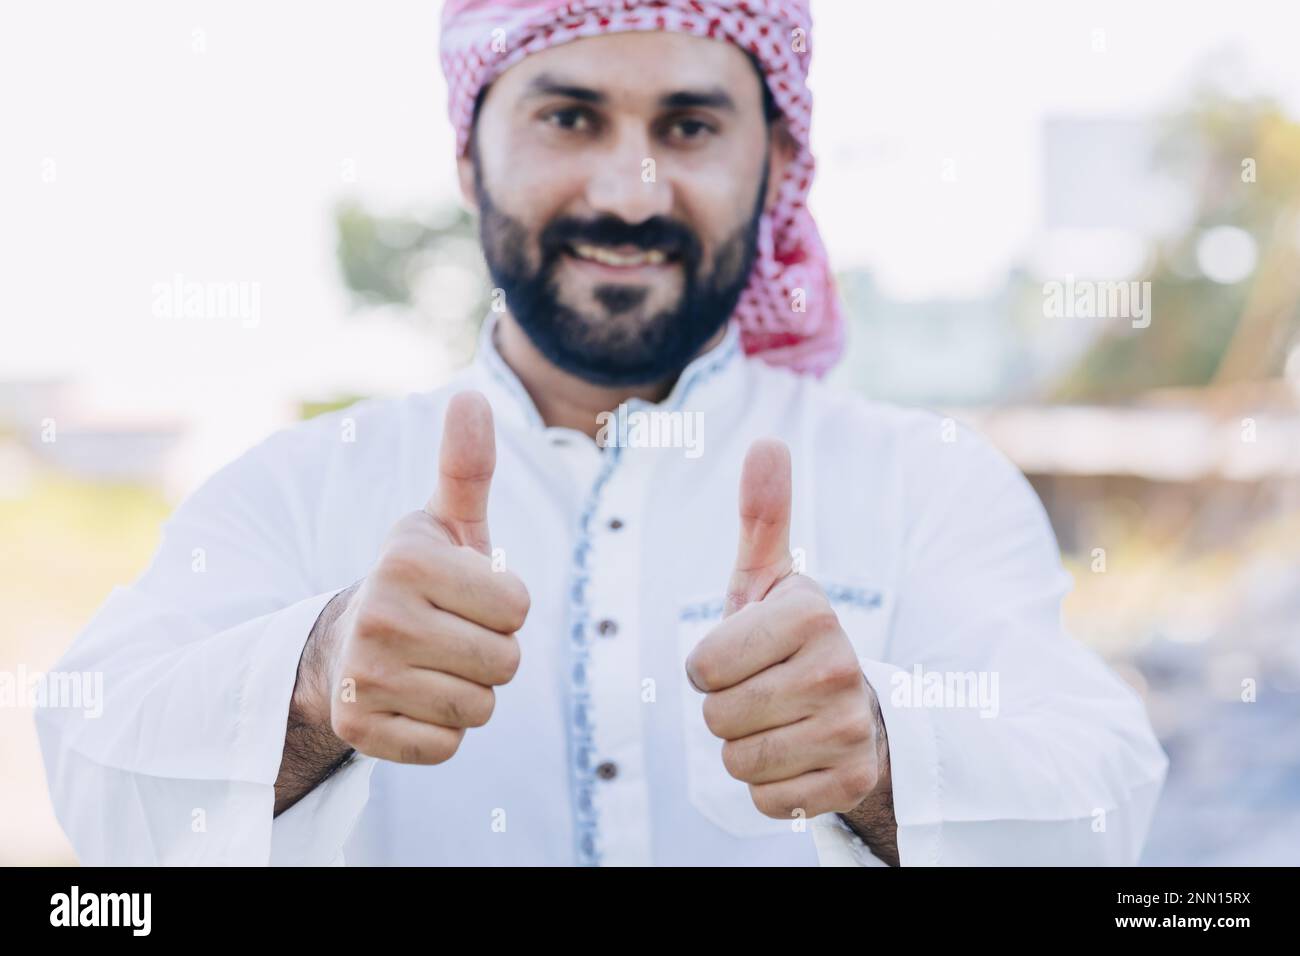 Arub muslimischer Erwachsener männlich glücklich lächelnd Daumen nach oben und sieht aus wie eine Nahaufnahme Stockfoto